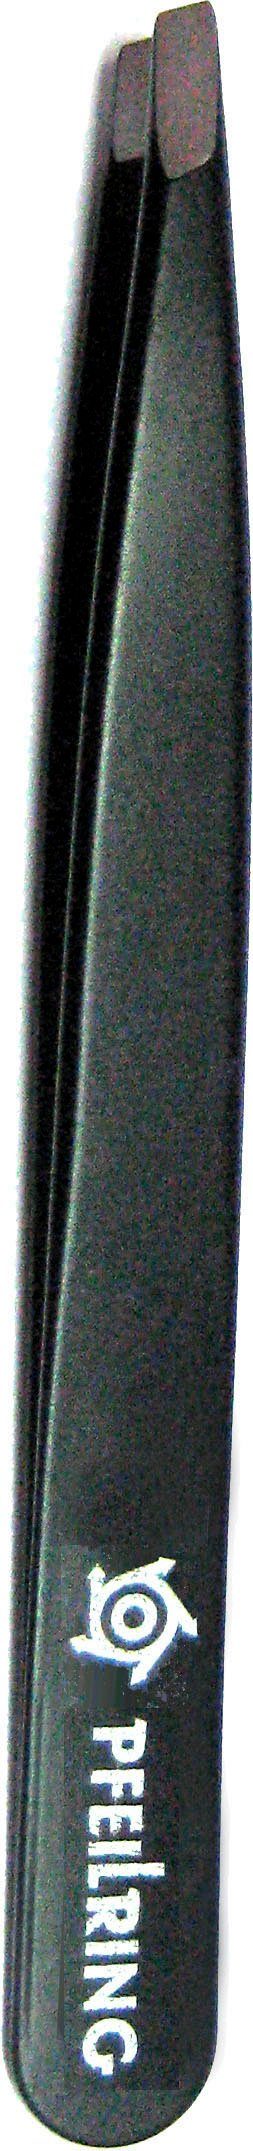 Pinzette, PFEILRING schwarz rostfrei 9,7cm,